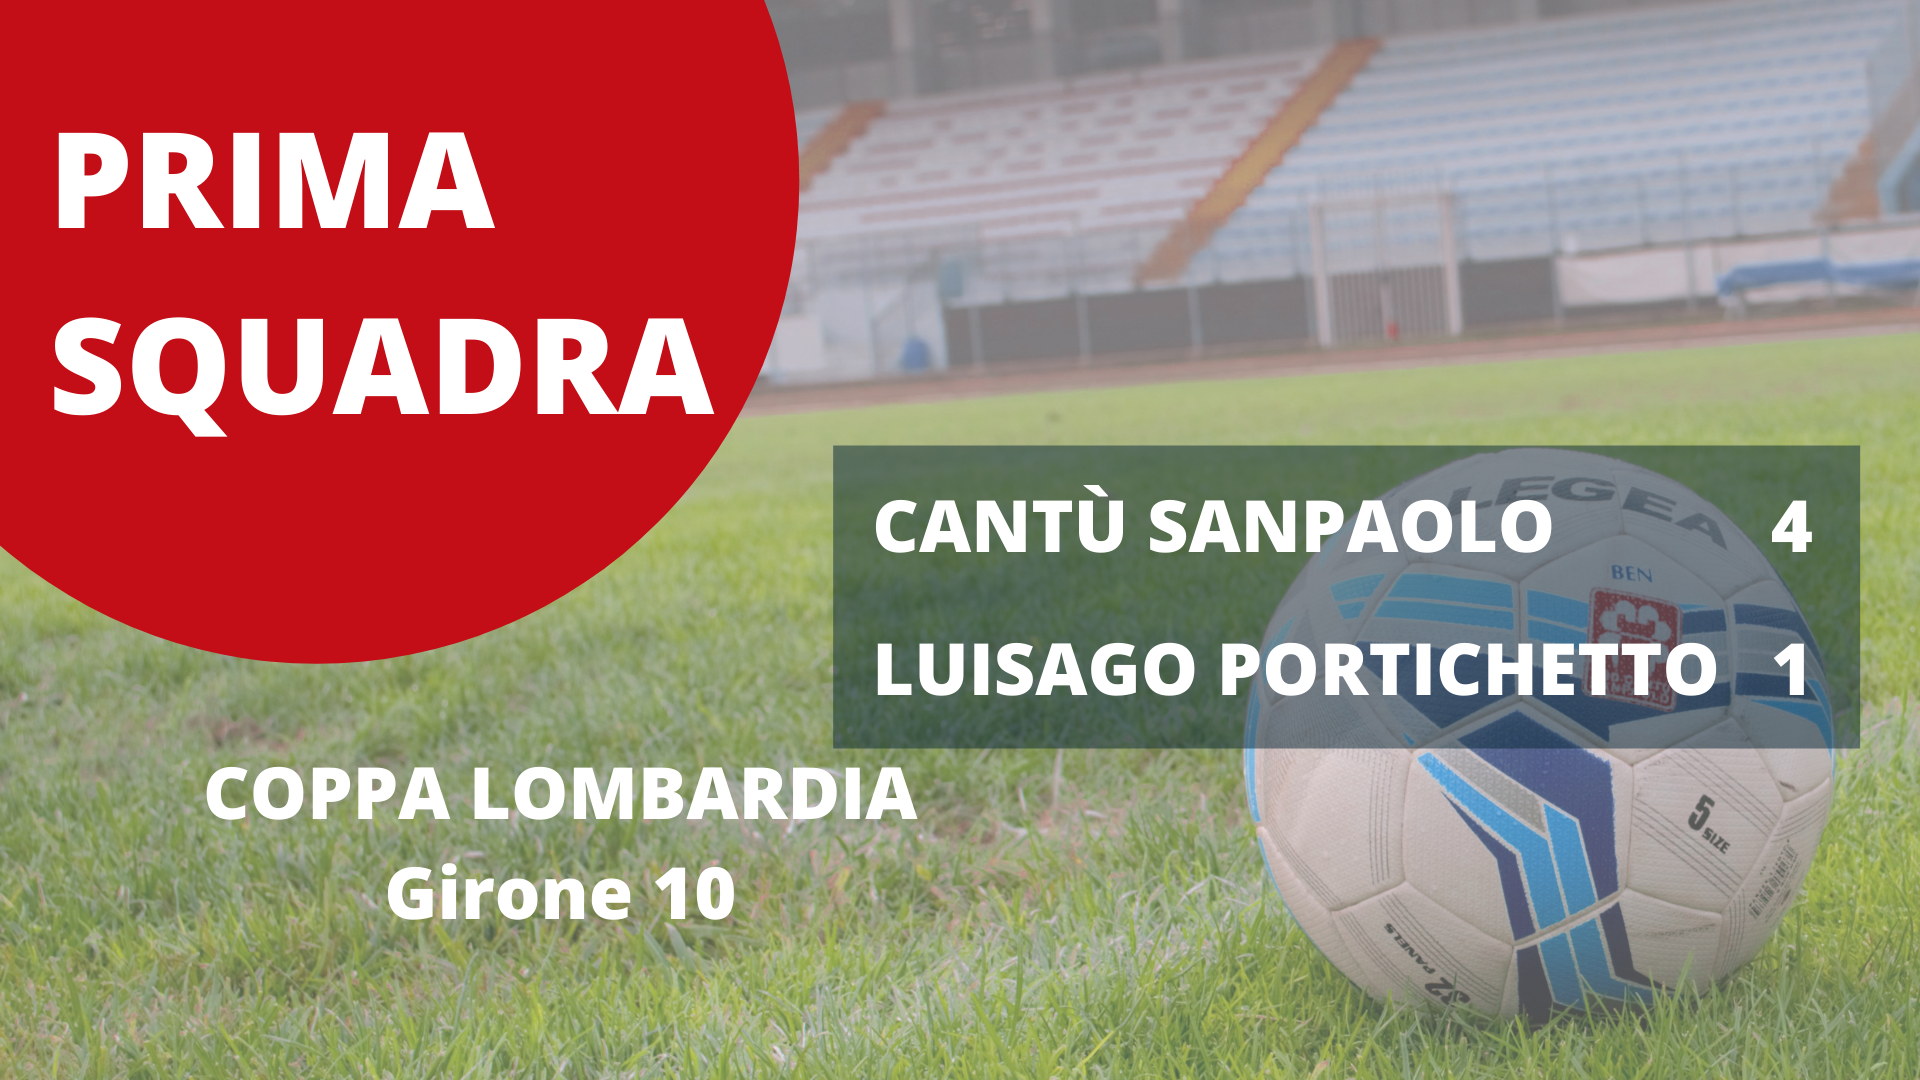 Prima Squadra | Coppa Lombardia: Cantù Sanpaolo vs Luisago Portichetto 4 – 1